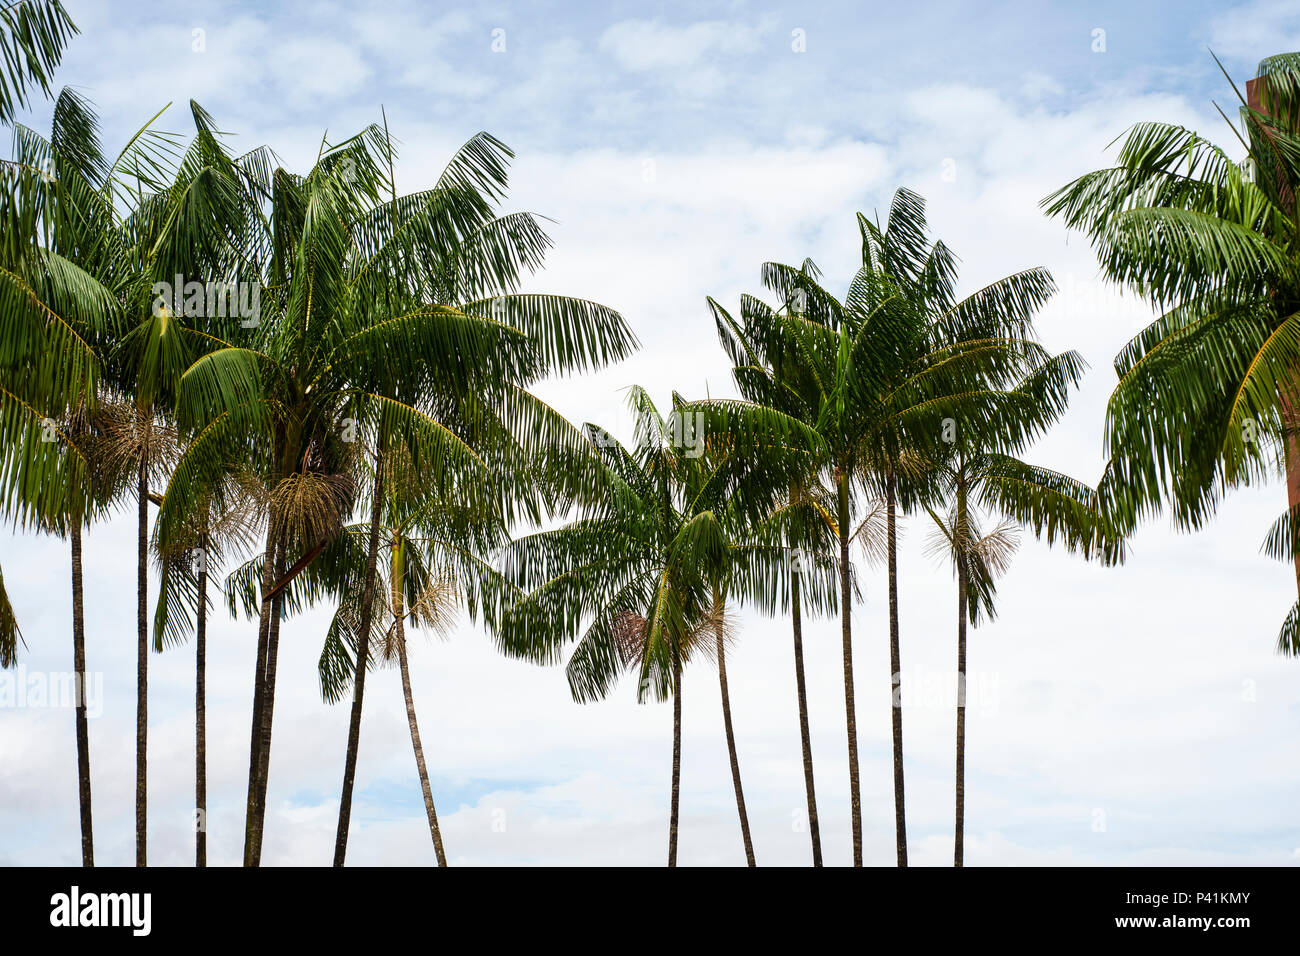 Acai (Euterpe oleracea) palms against a cloudy sky Stock Photo